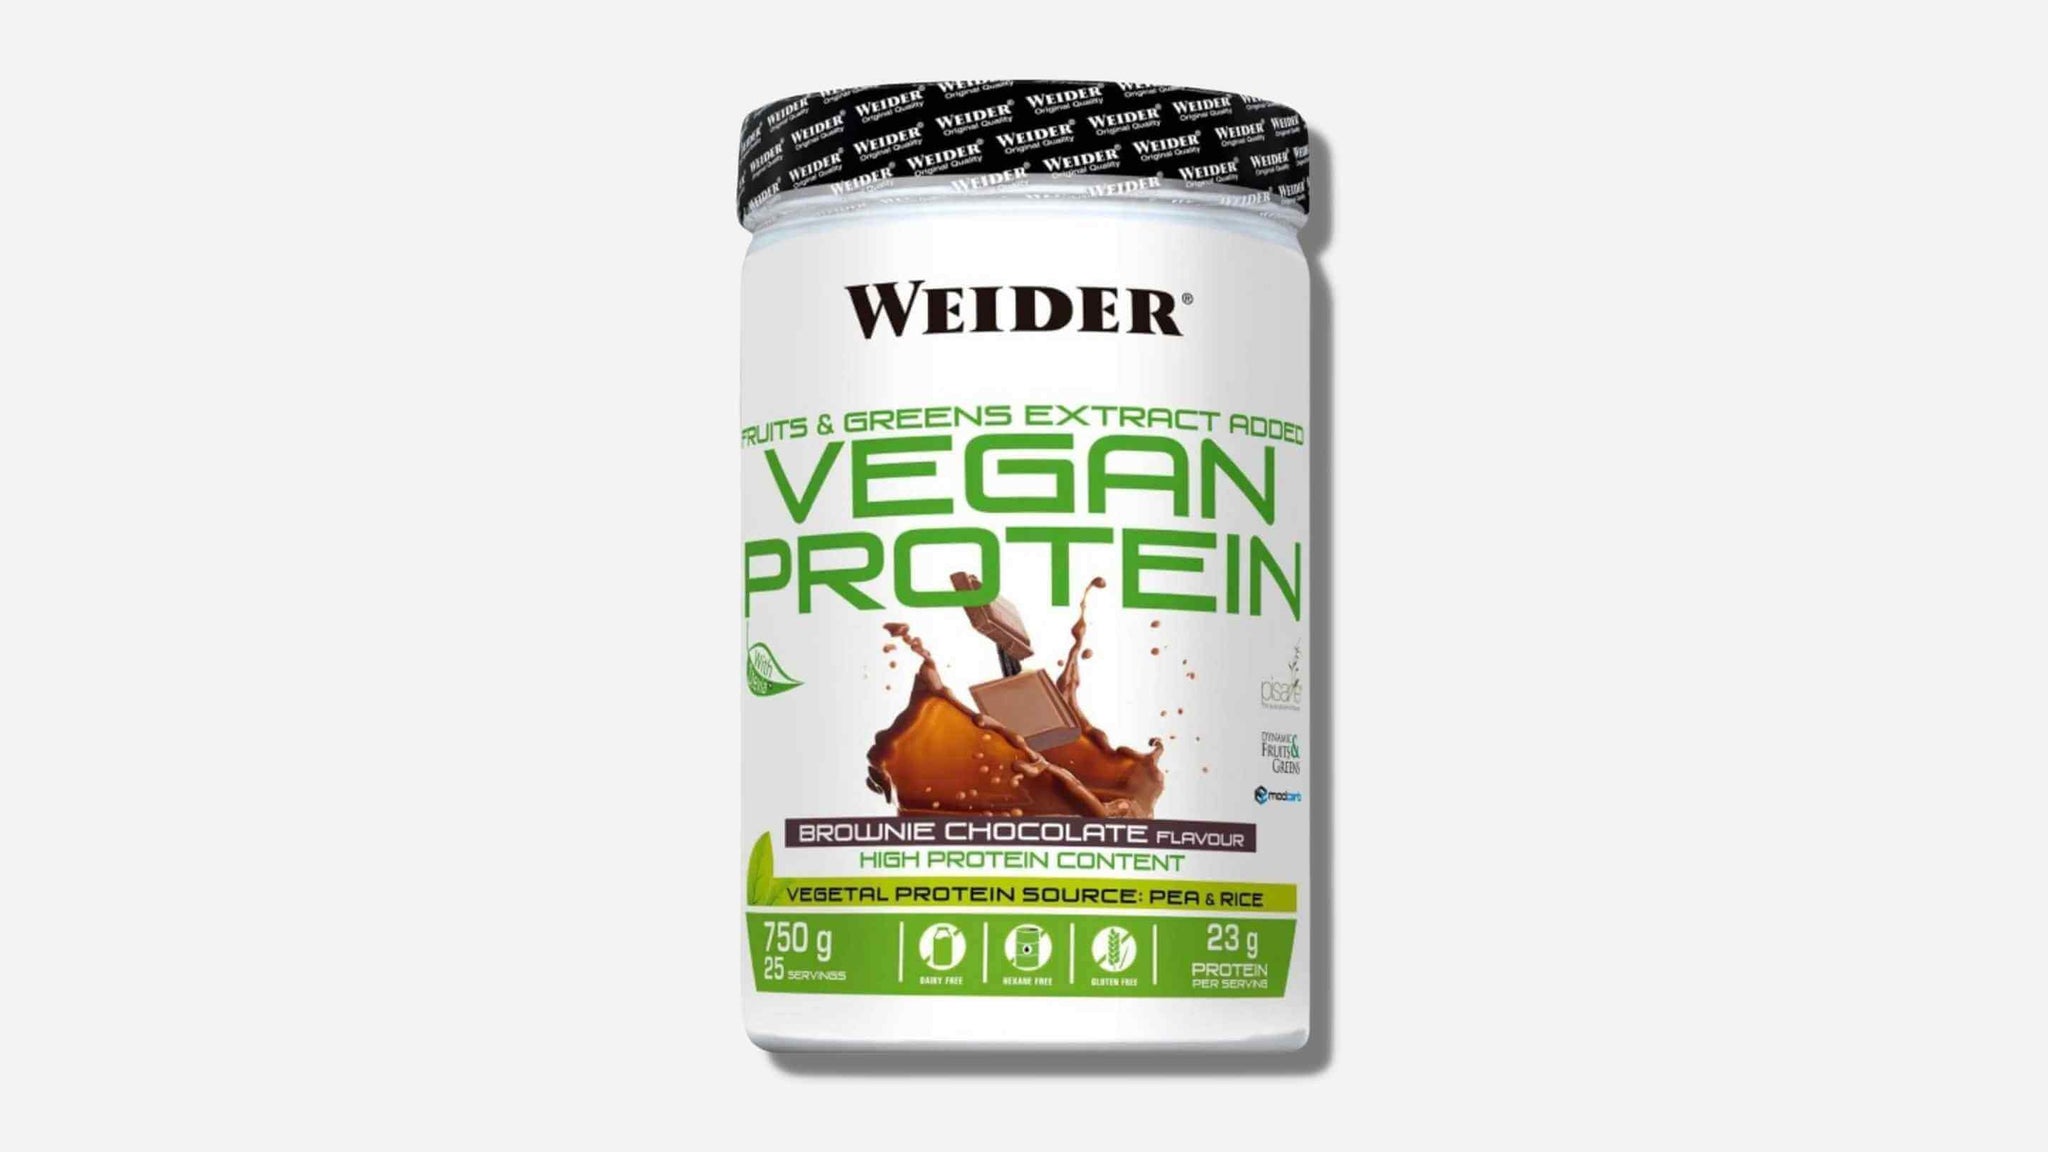 Weider Vegan Protein